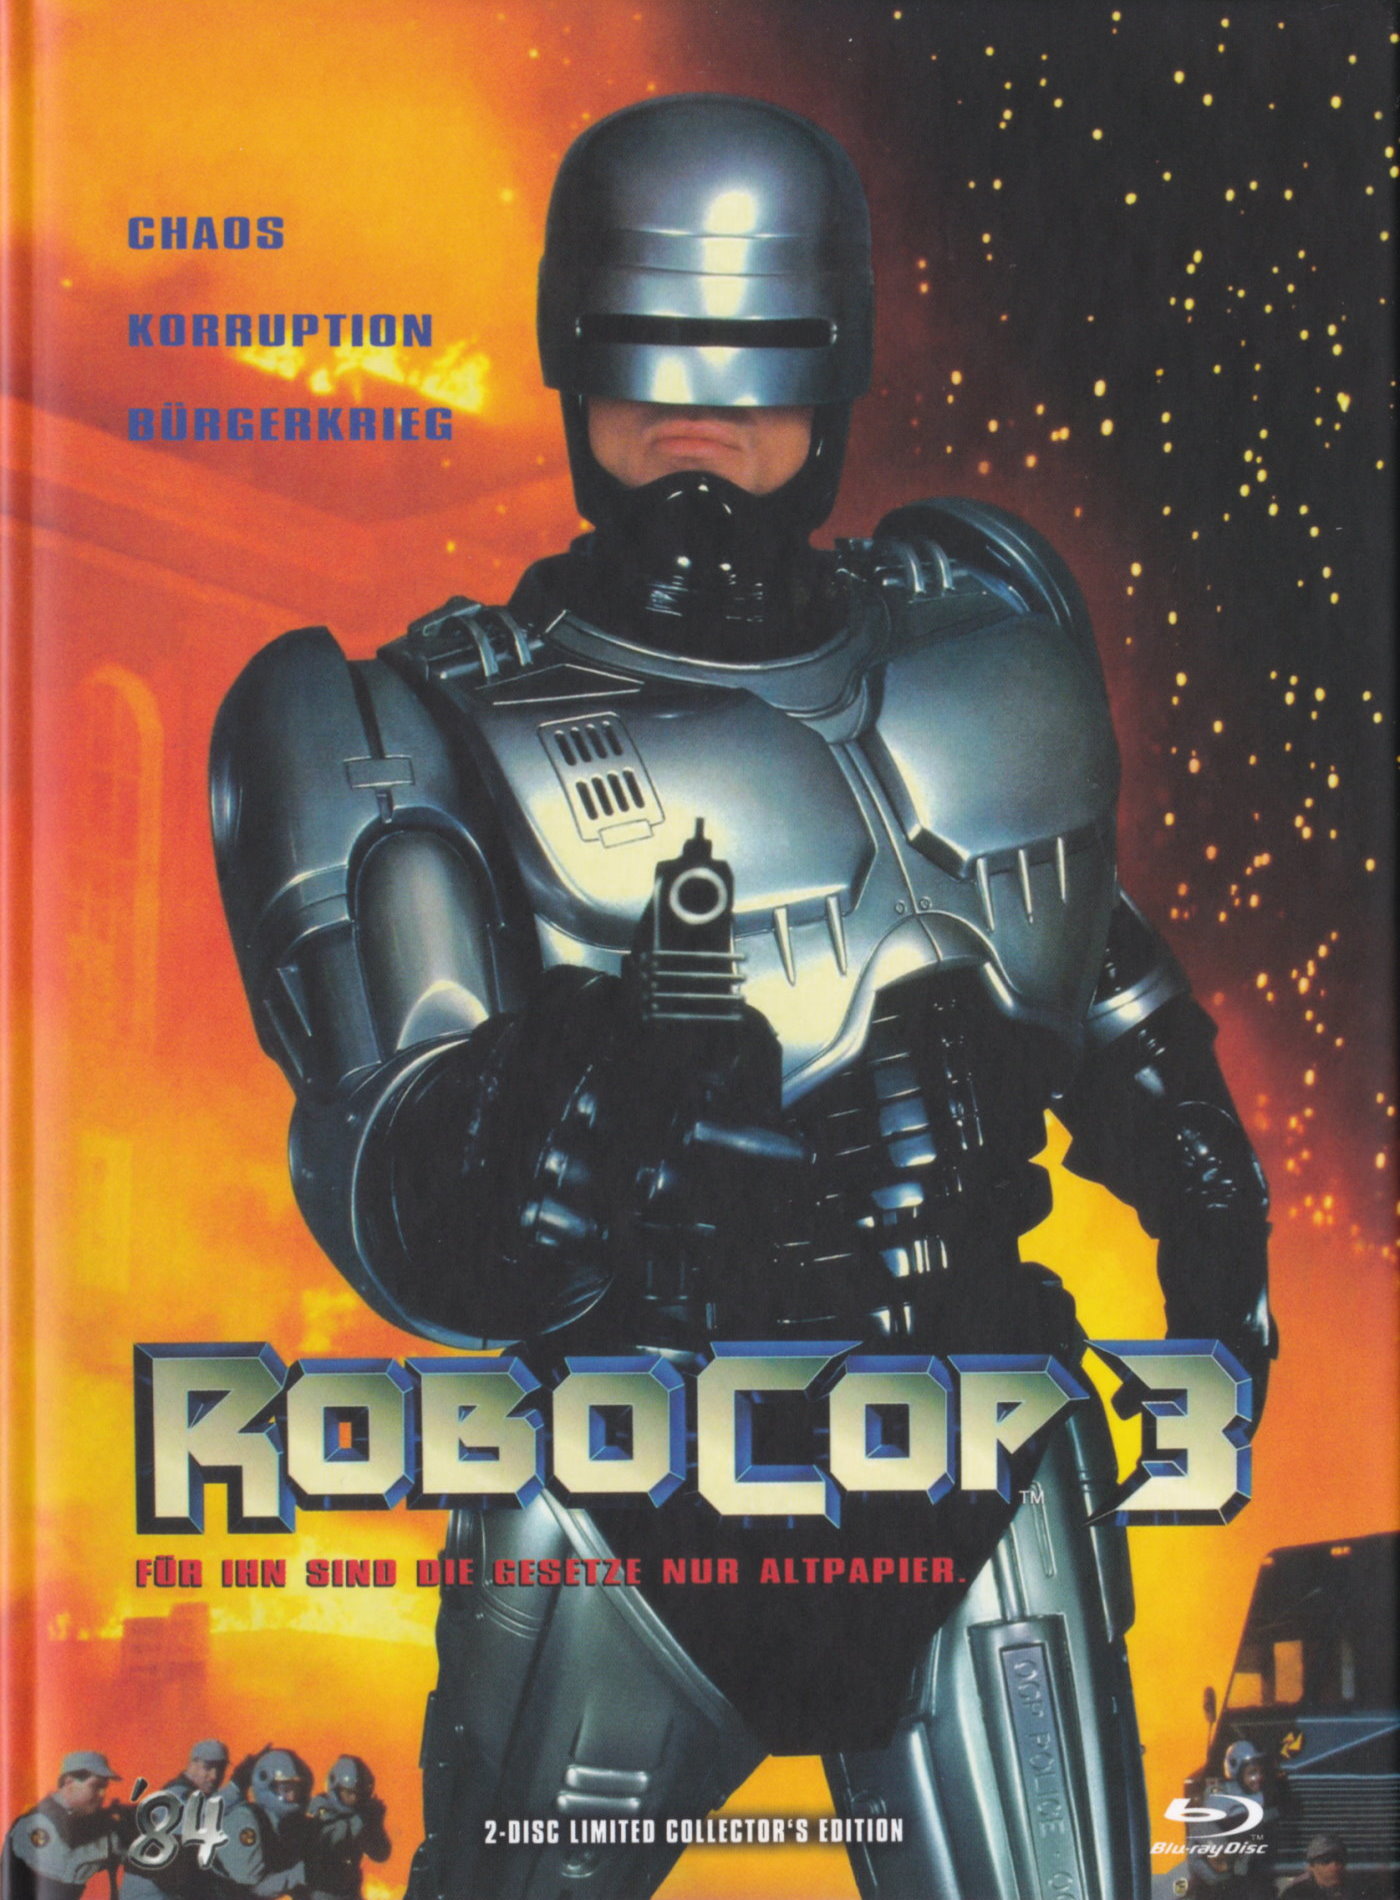 Cover - RoboCop 3.jpg